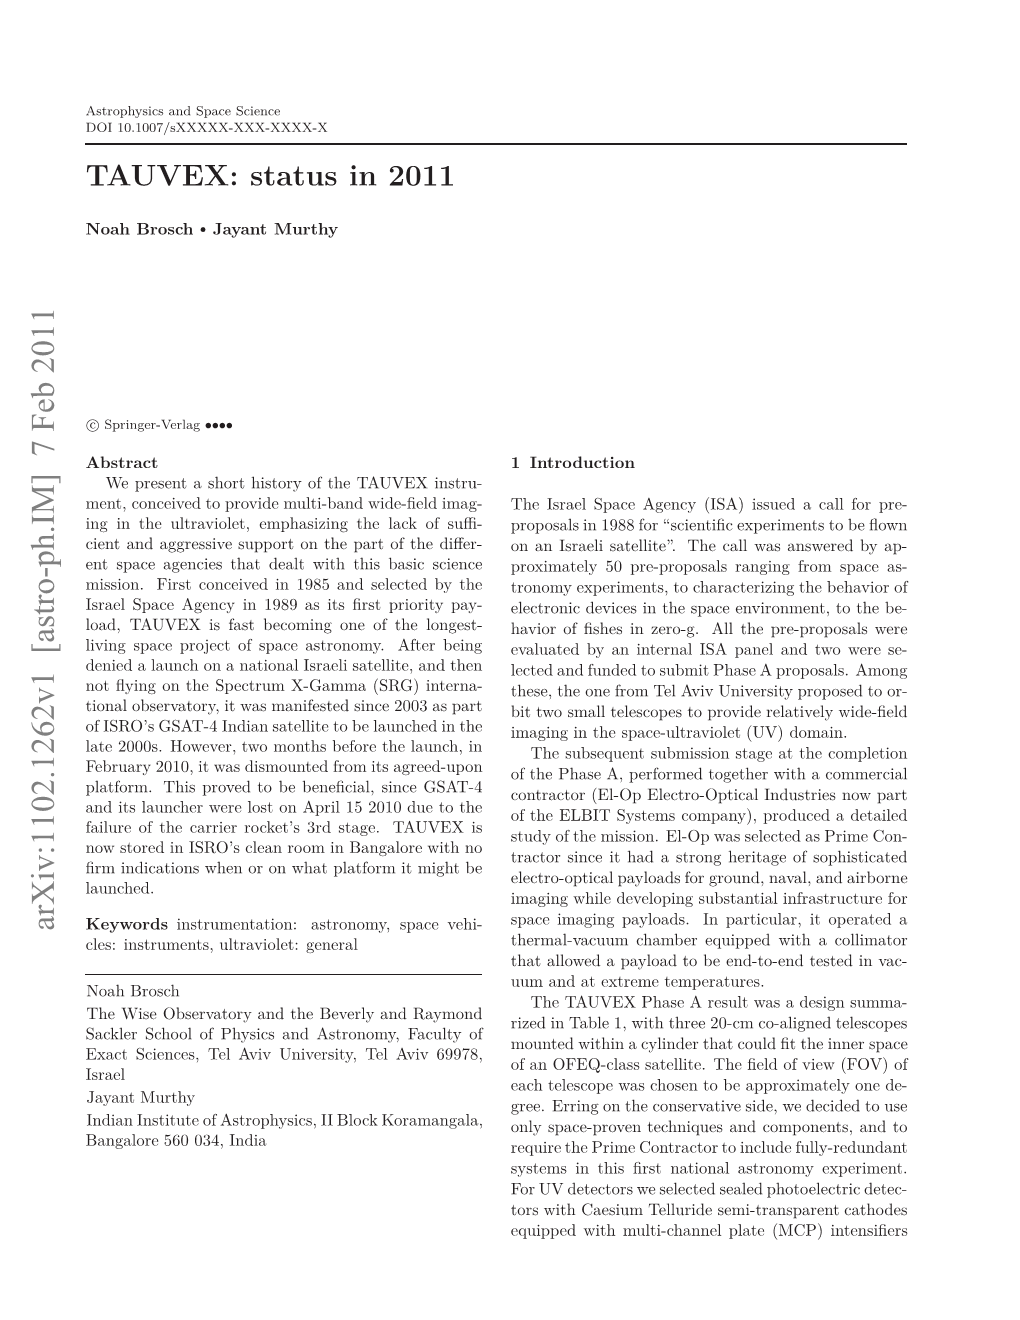 TAUVEX: Status in 2011 3